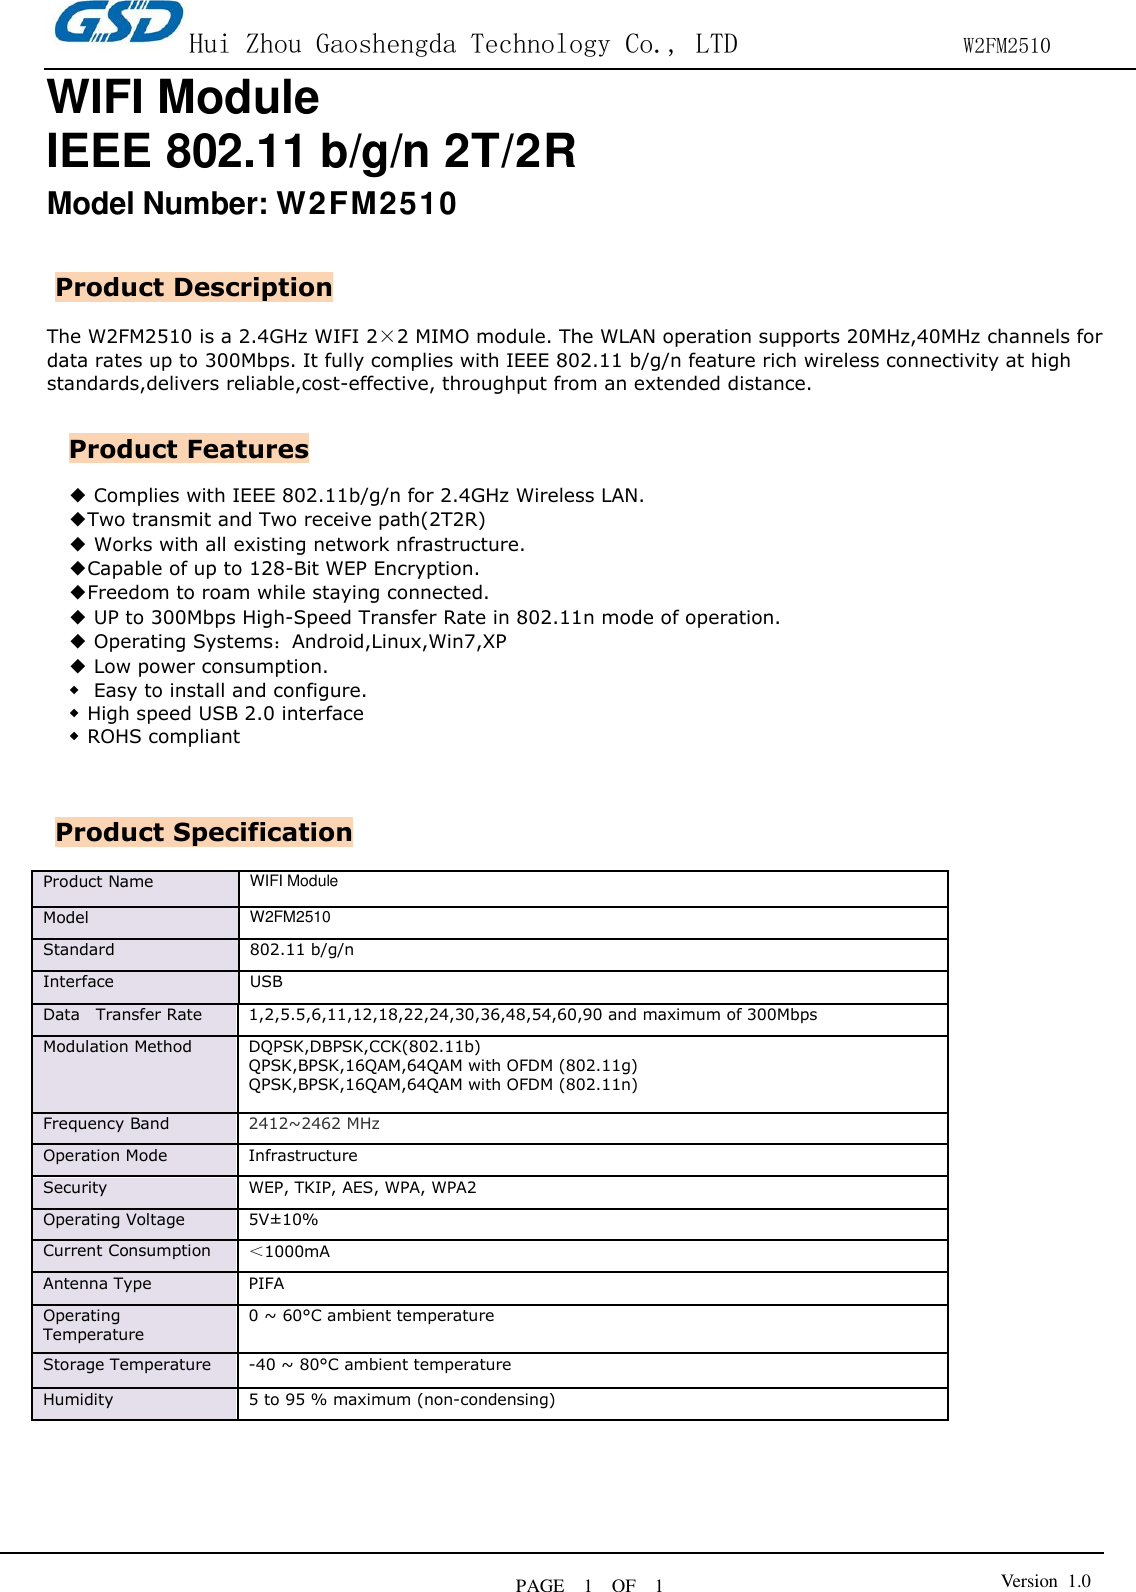 Page 1 of HUIZHOU GAOSHENGDA TECHNOLOGY W2FM2510 WIFI module User Manual